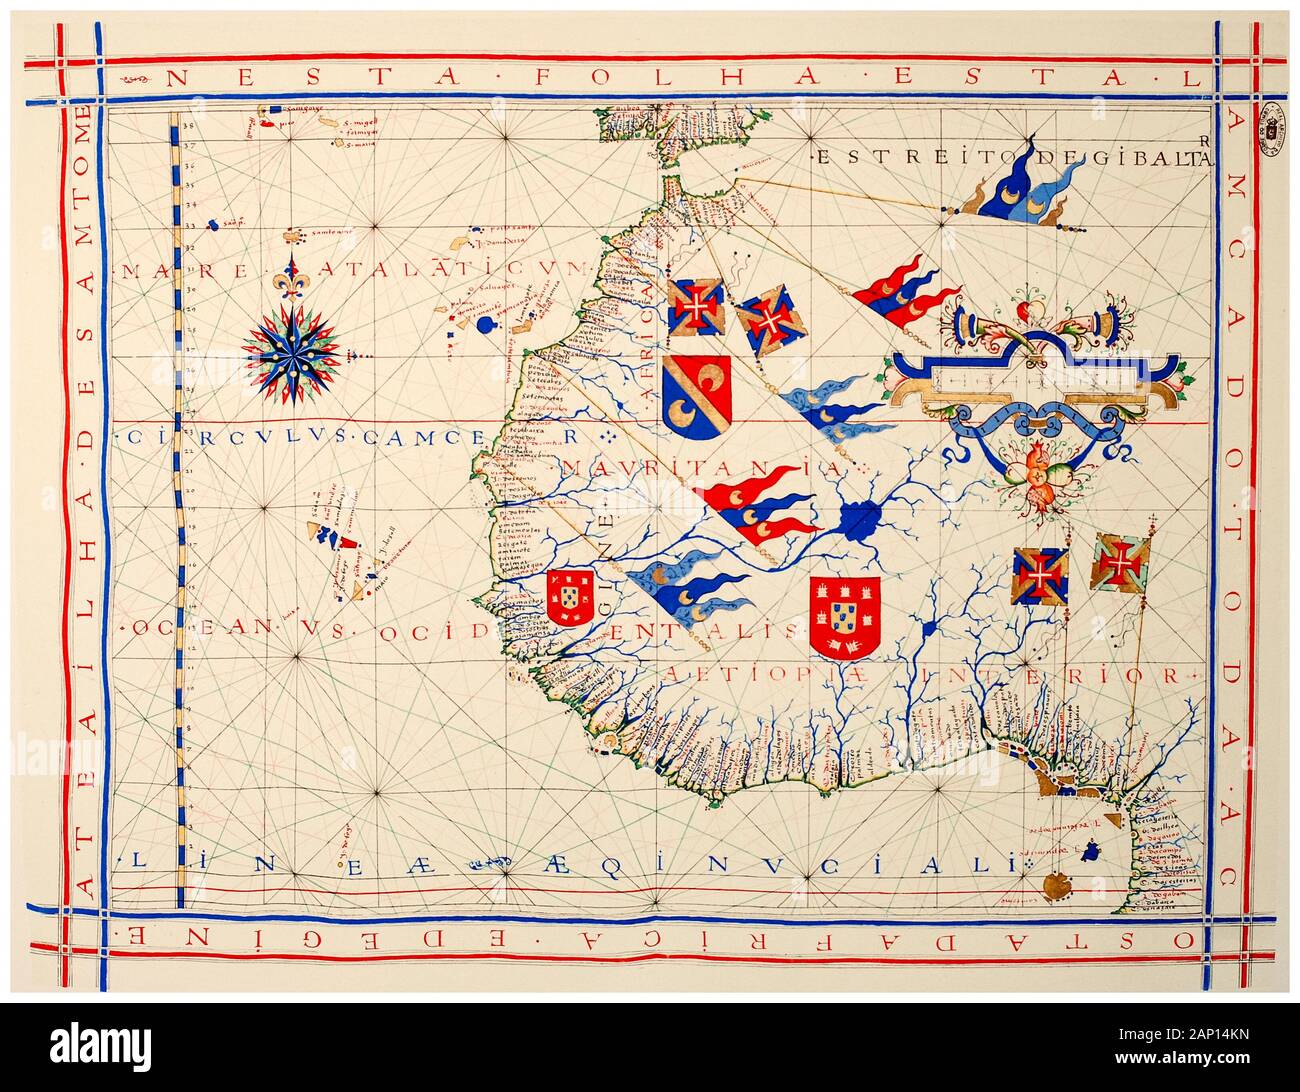 Antiguo Vintage del siglo XVI Mapa de África Occidental en una carta náutica del cartógrafo portugués Fernão Vaz Dourado, ilustración, 1571 Foto de stock